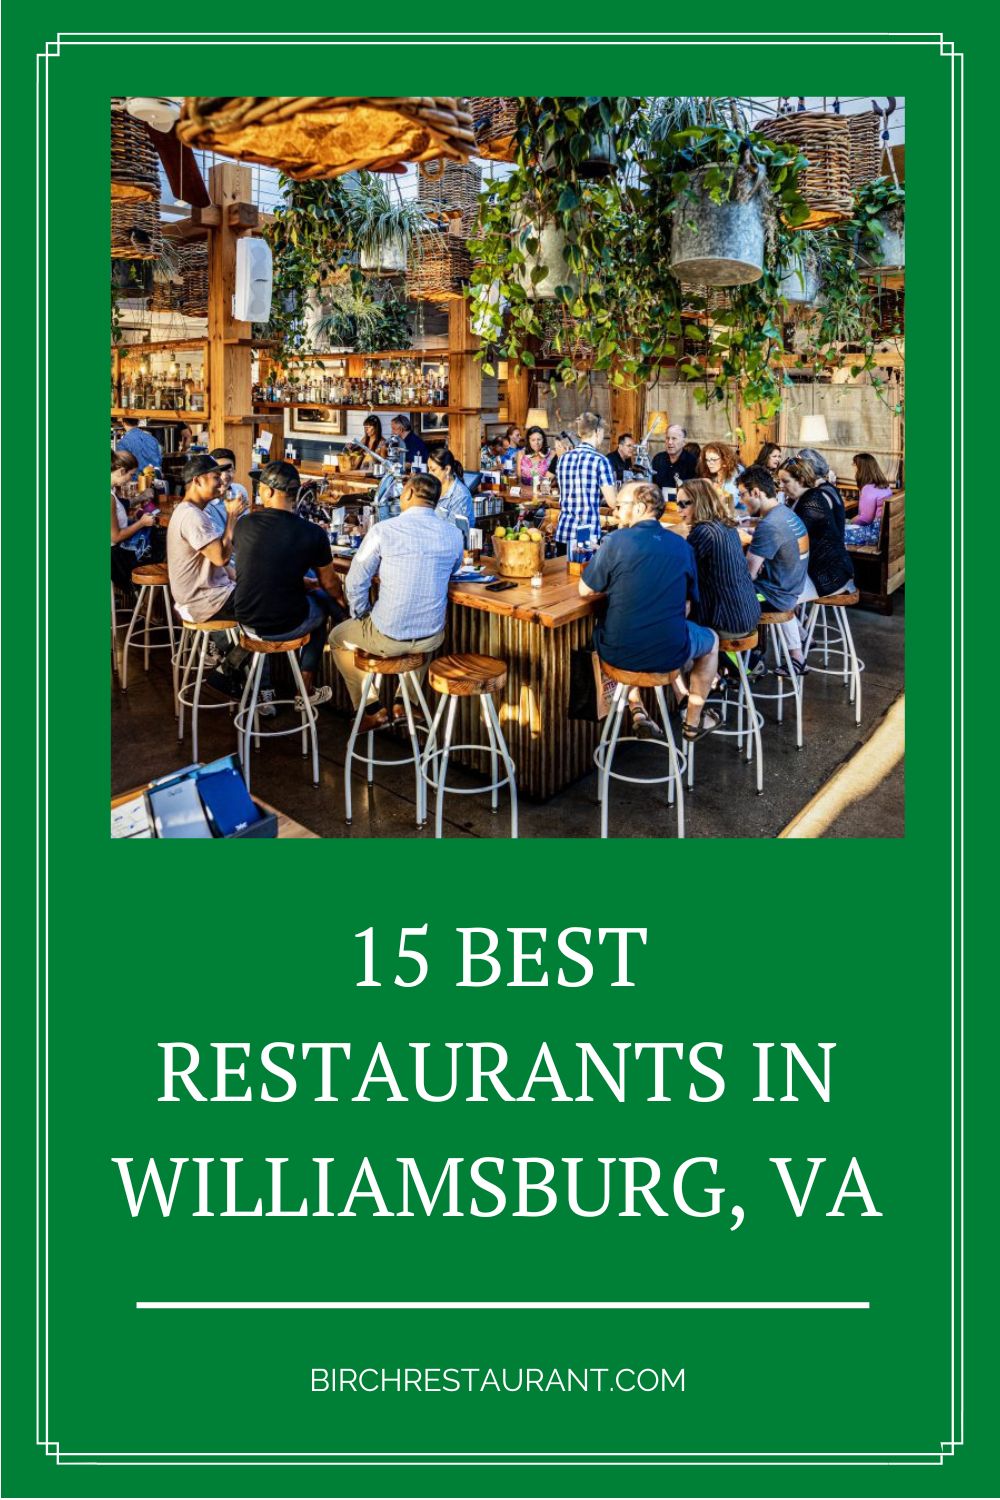 Best Restaurants in Williamsburg